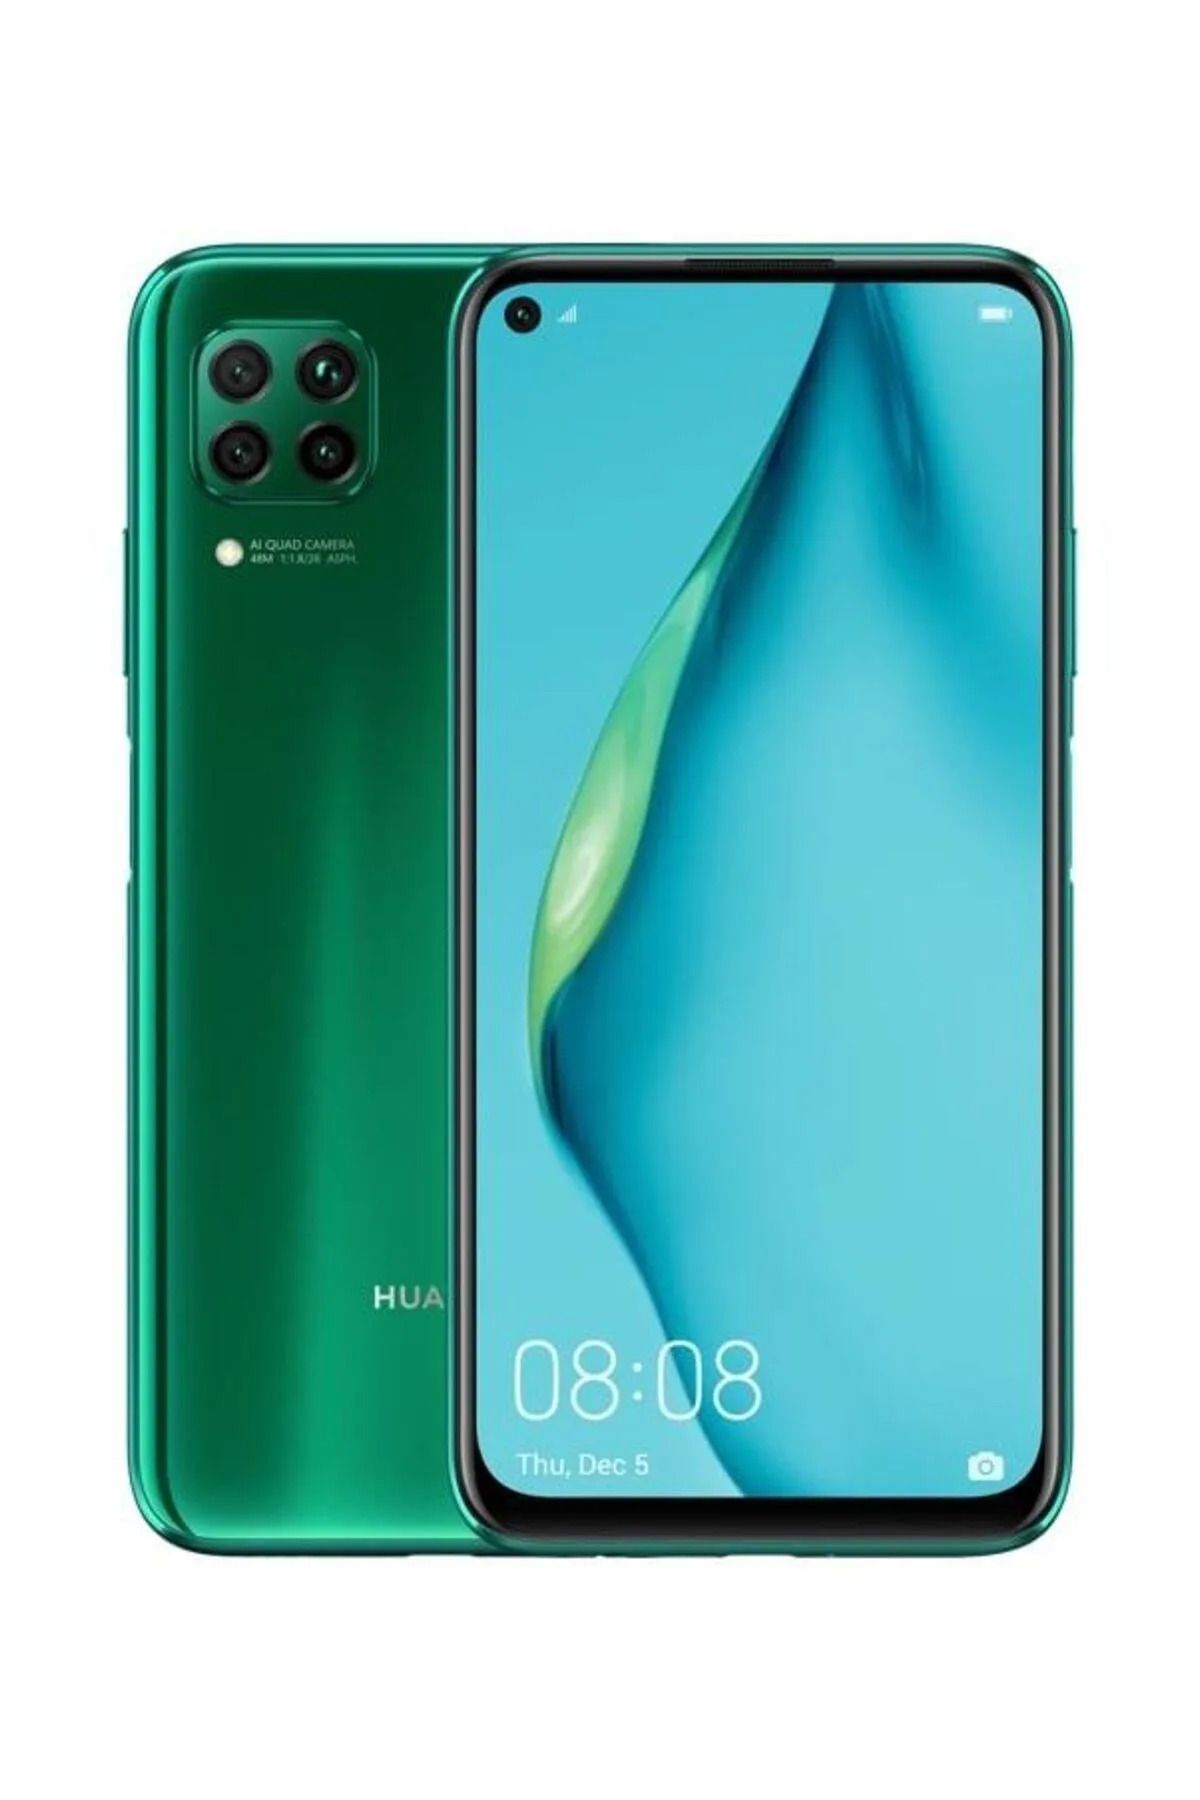 Huawei Yenilenmiş Huawei P40 Lite 128 GB Green Cep Telefonu (A Kalite - 1 Yıl Garantili)